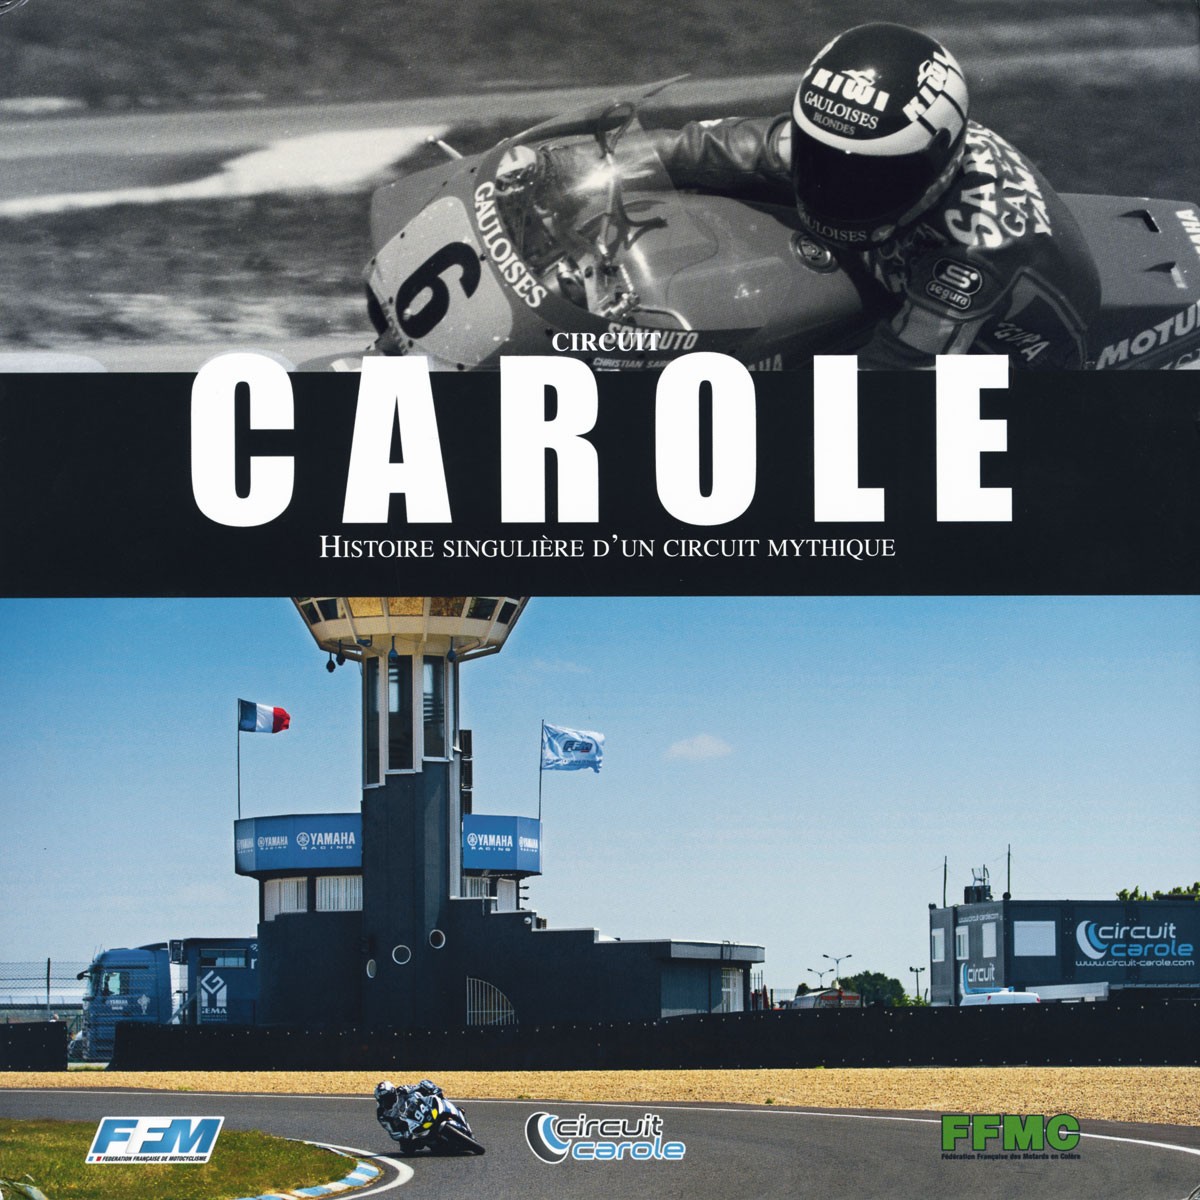 Circuit Carole histoire singulière d'un circuit mythique